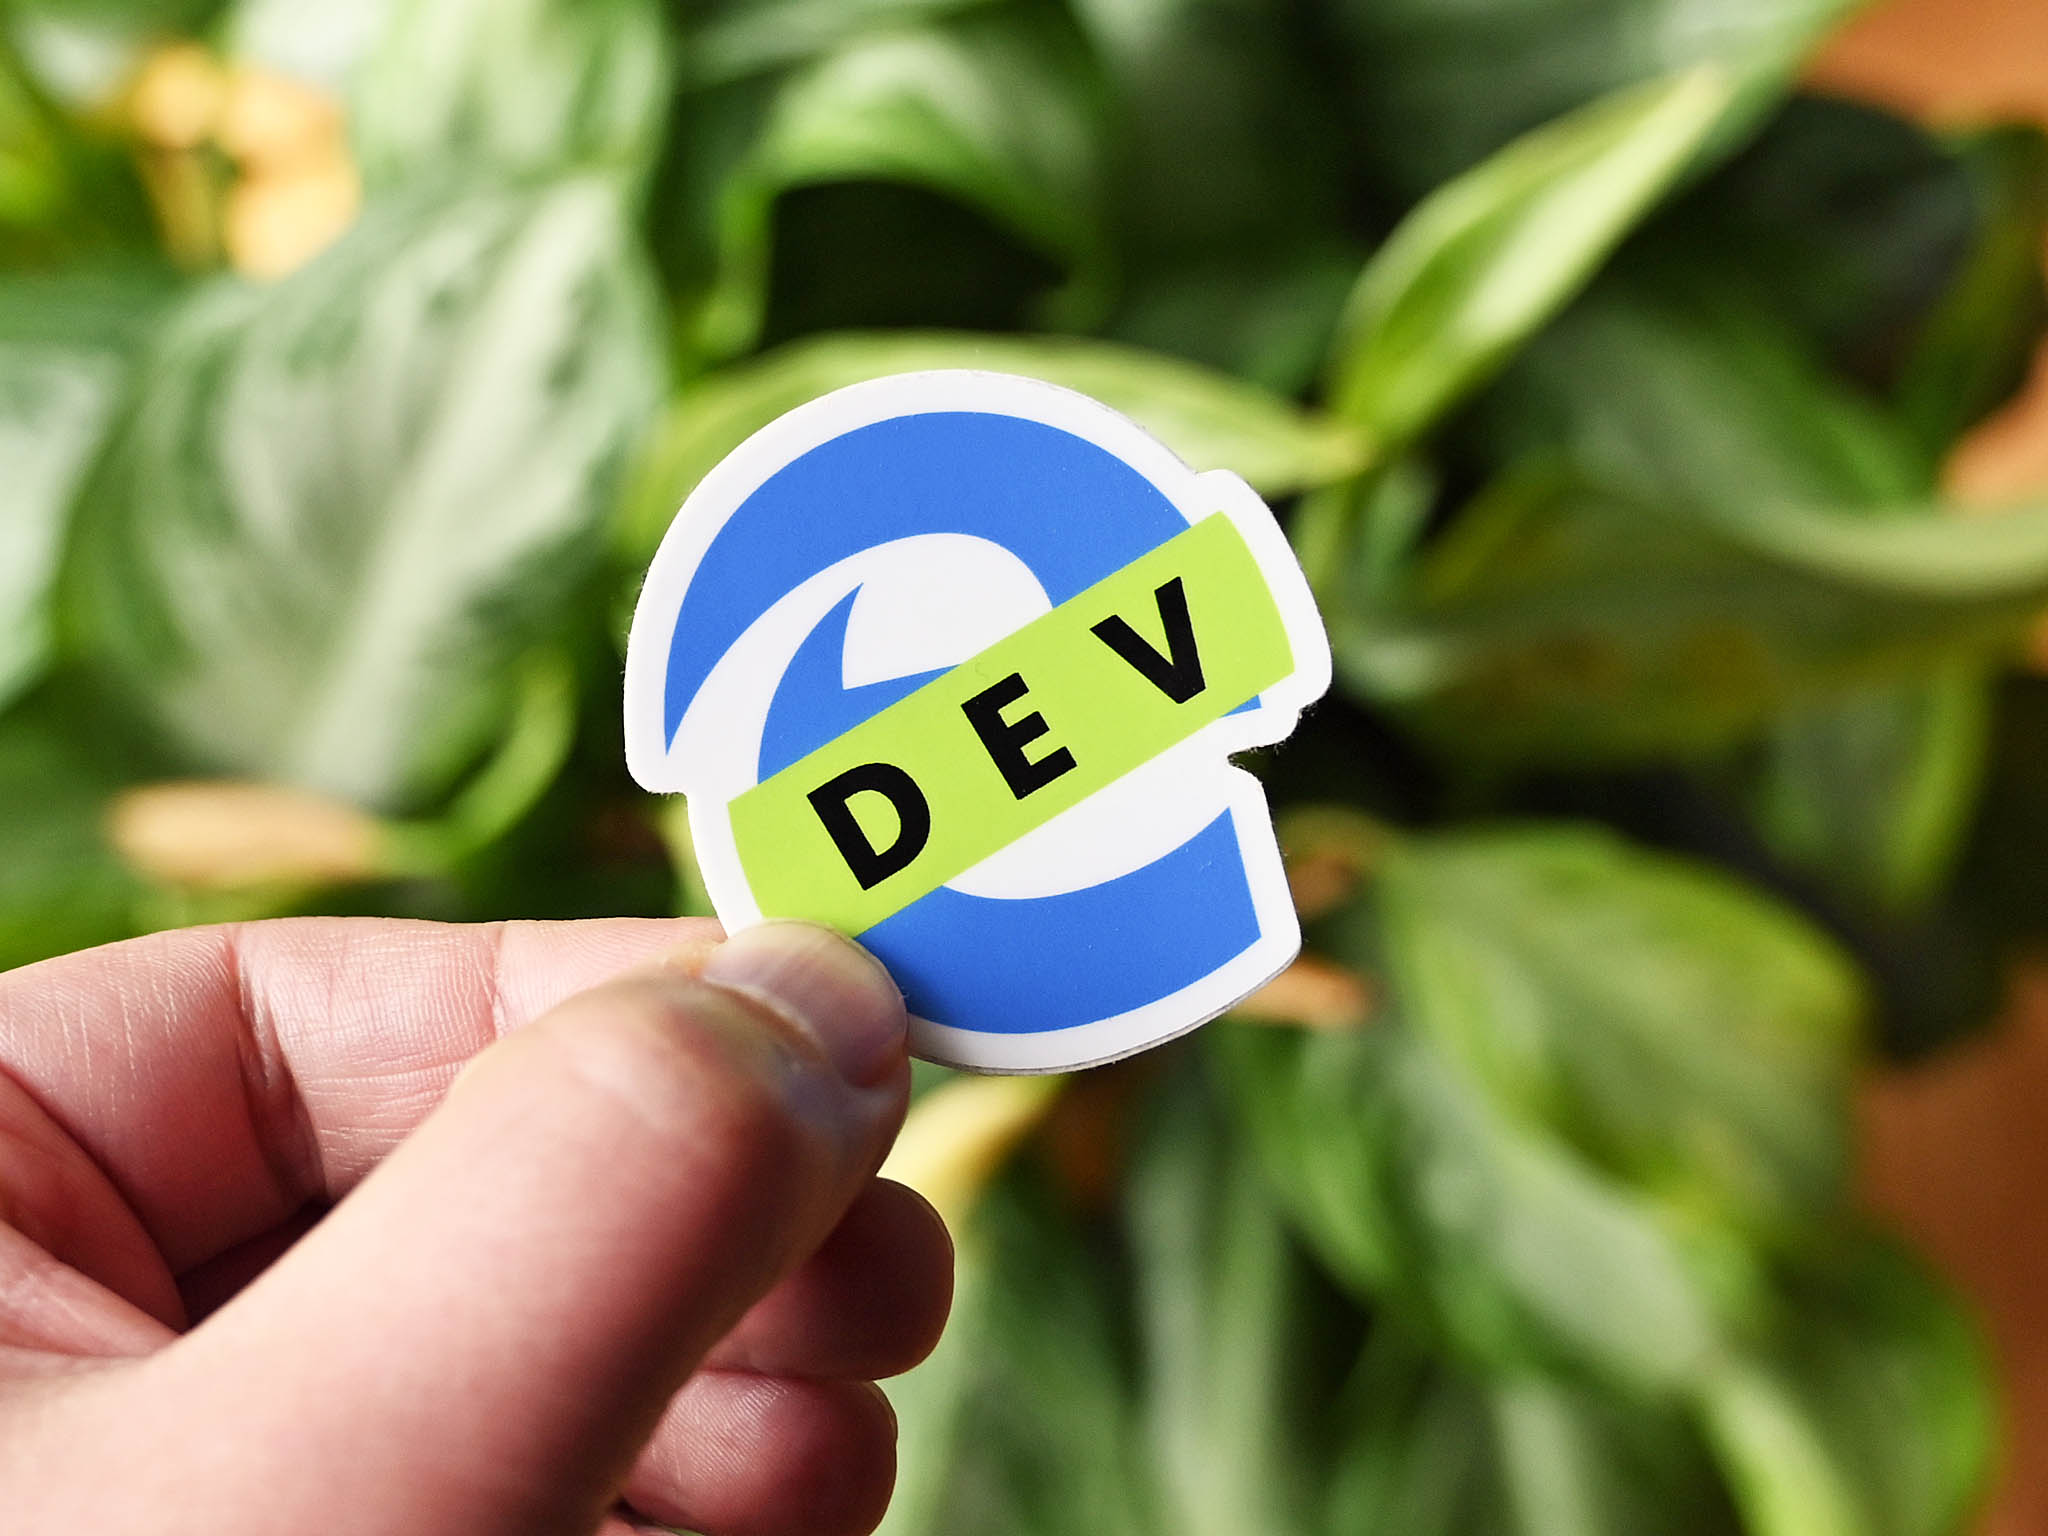 edge-dev-logo-sticker2019.jpg